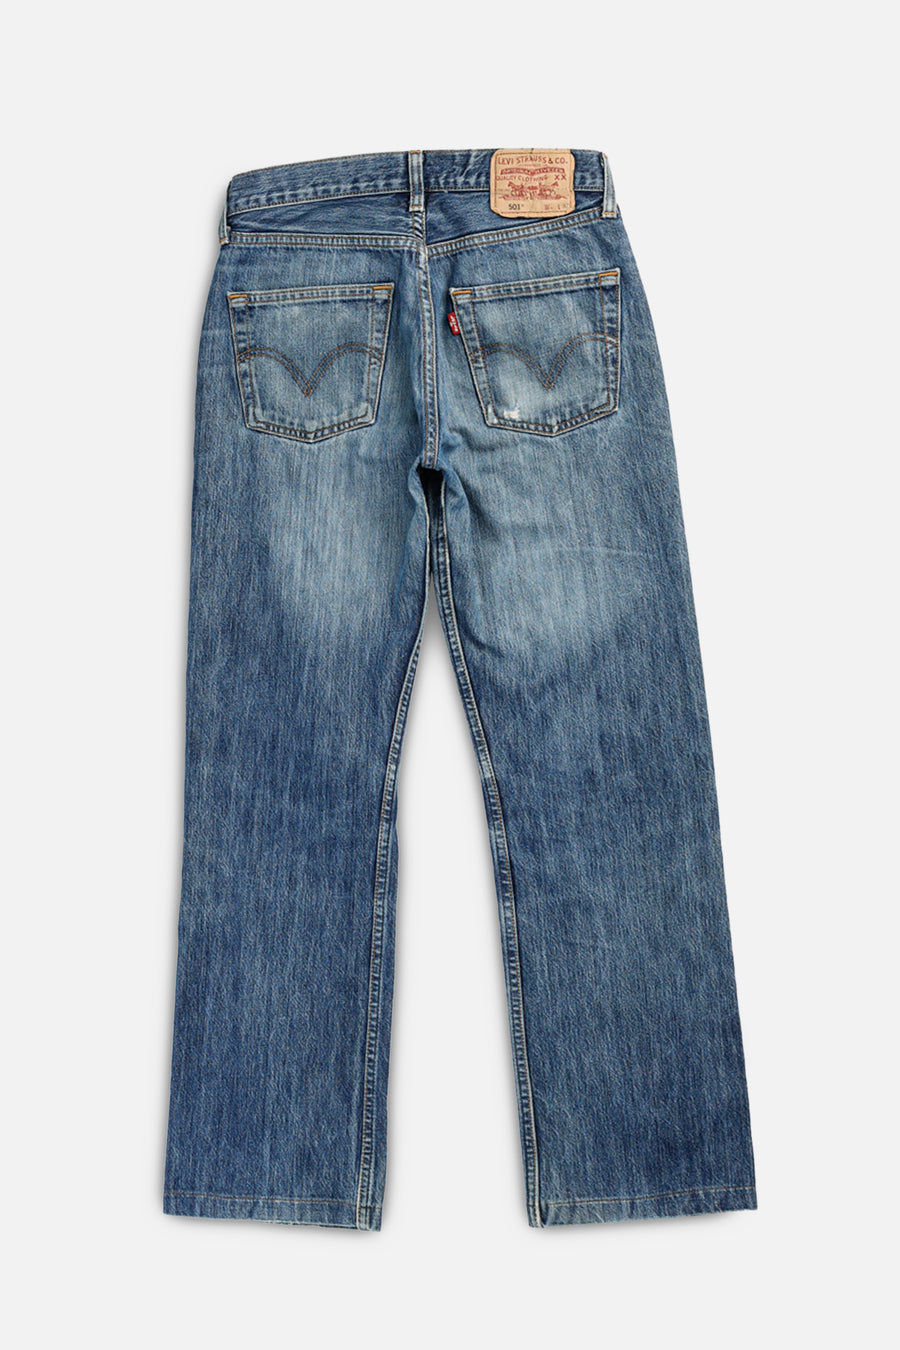 Vintage Levi's Denim Pants - W29 L32